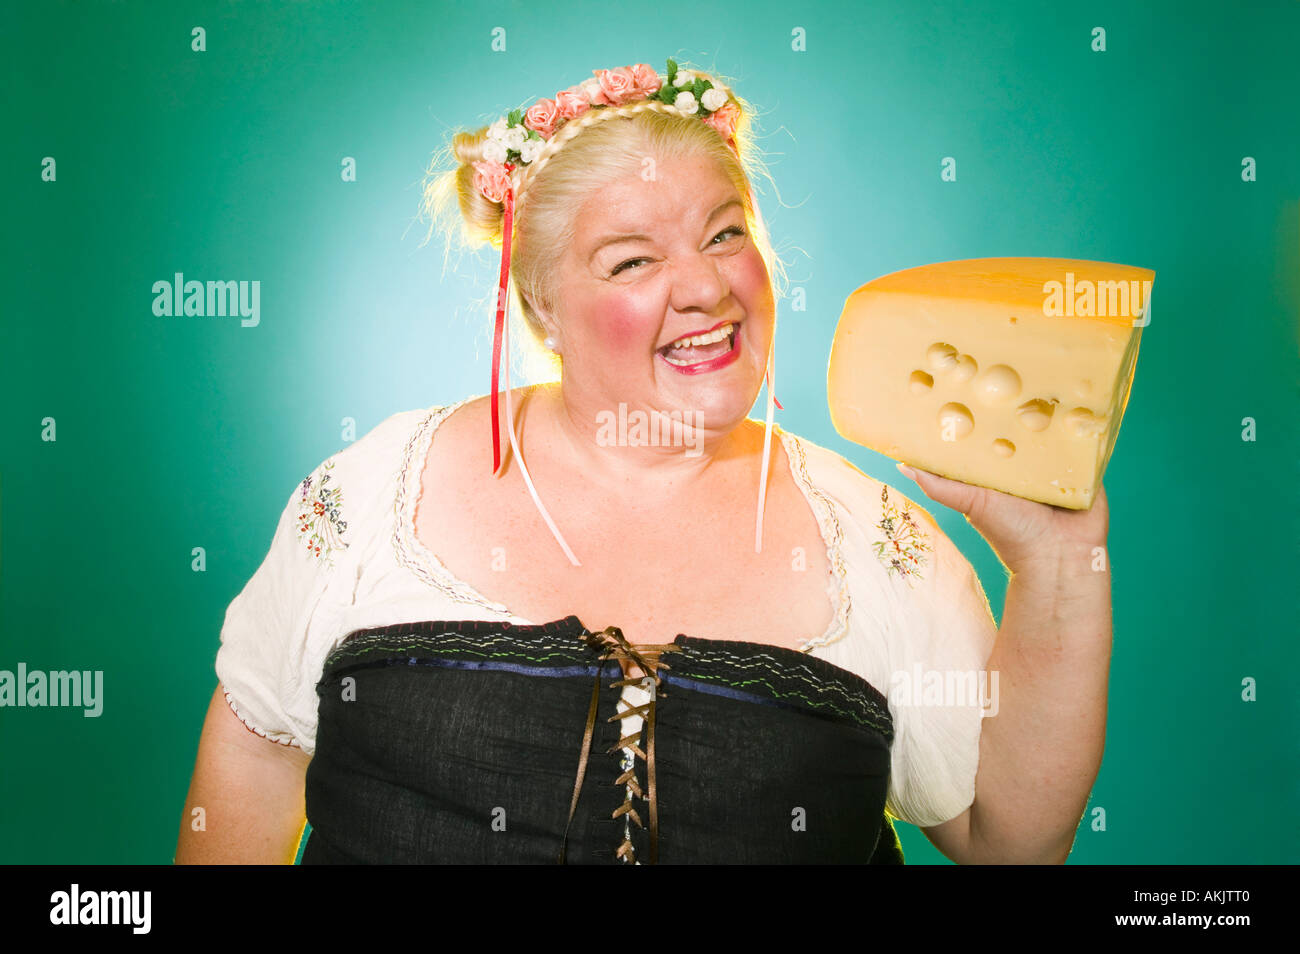 Frau im germanischen Kostüm mit Käse Keil Stockfotografie - Alamy